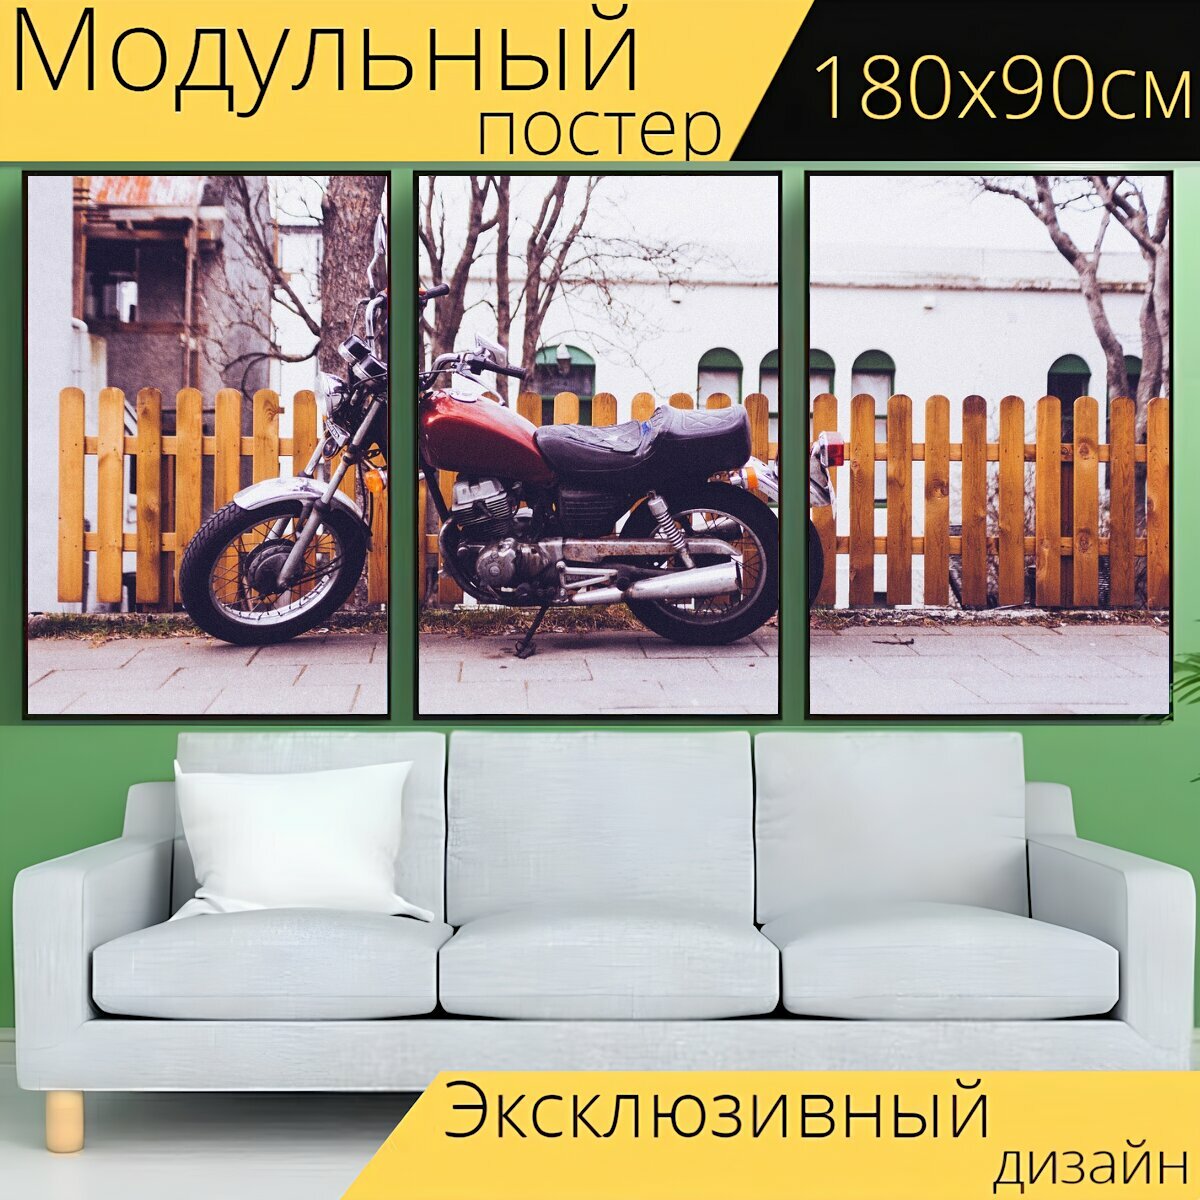 Модульный постер "Измельчитель, мотоцикл, велосипед" 180 x 90 см. для интерьера